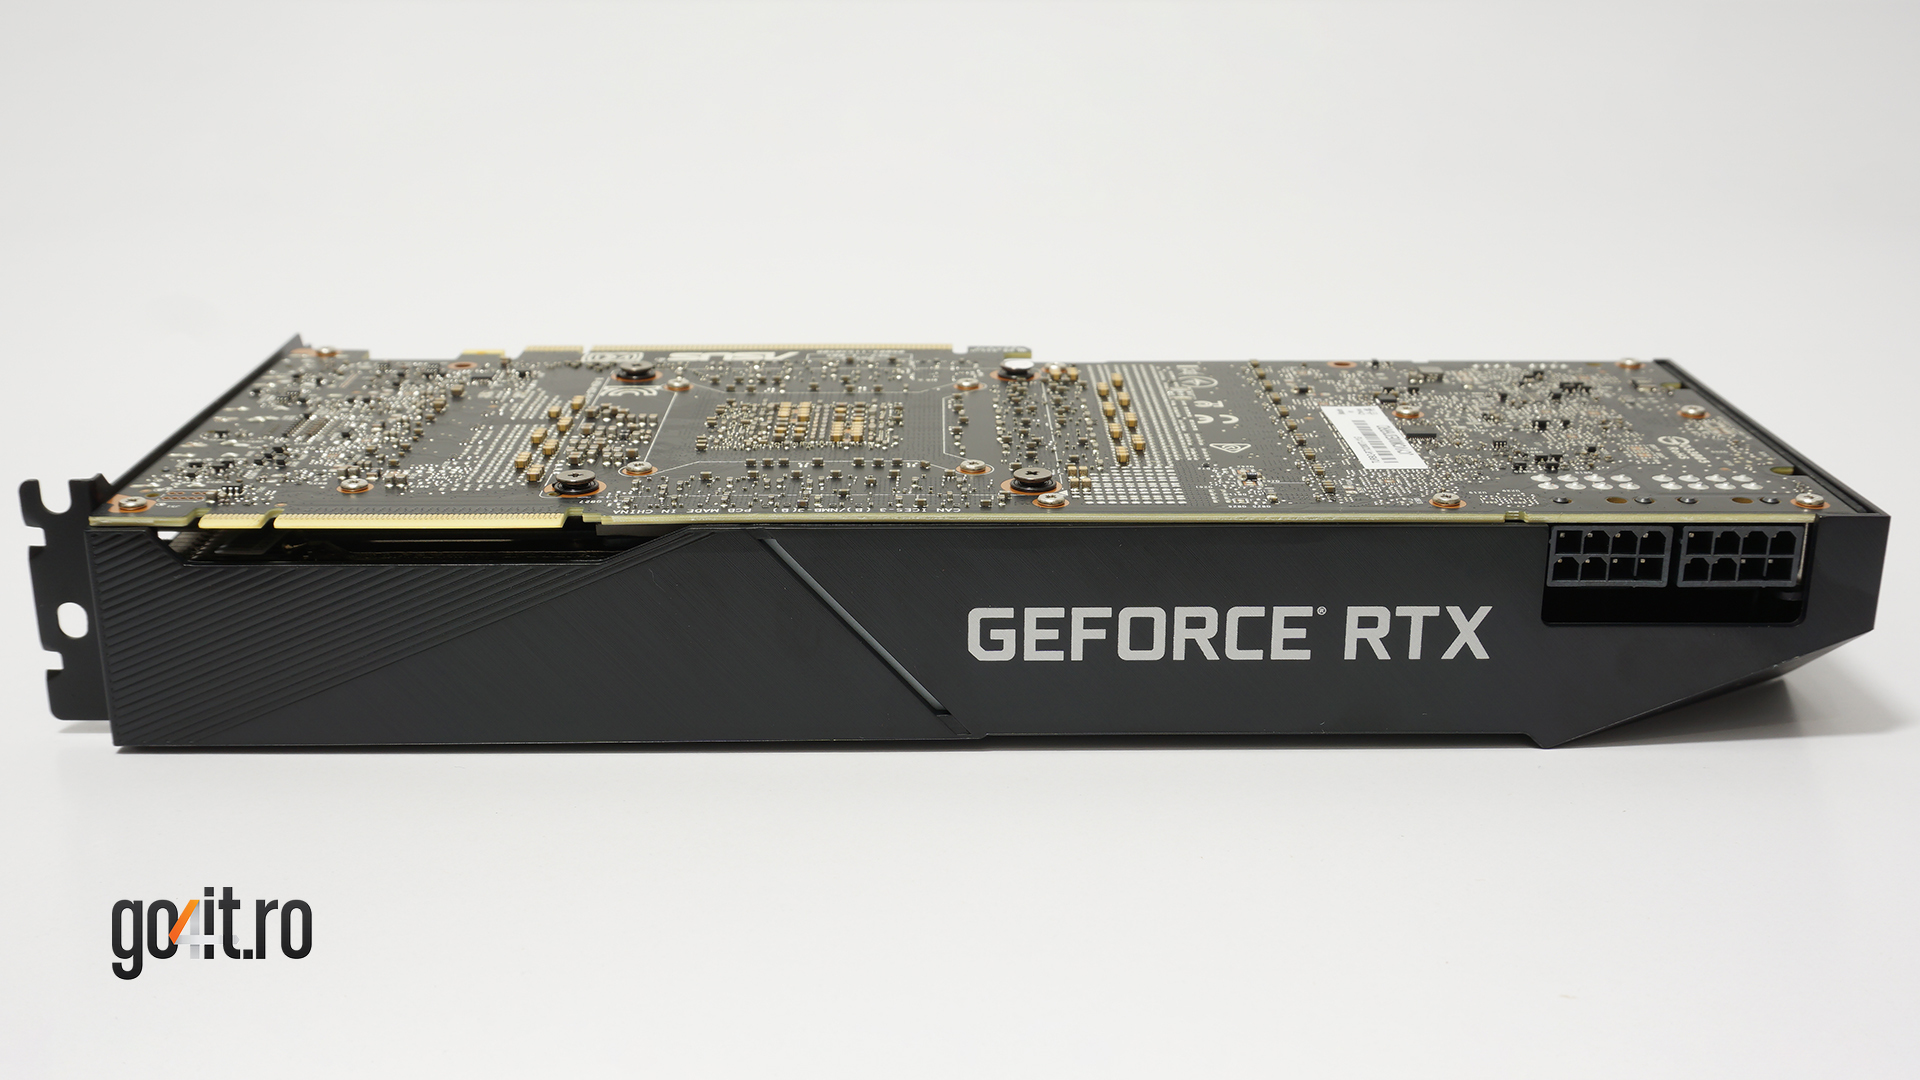 ASUS GeForce RTX 2080 Ti Turbo